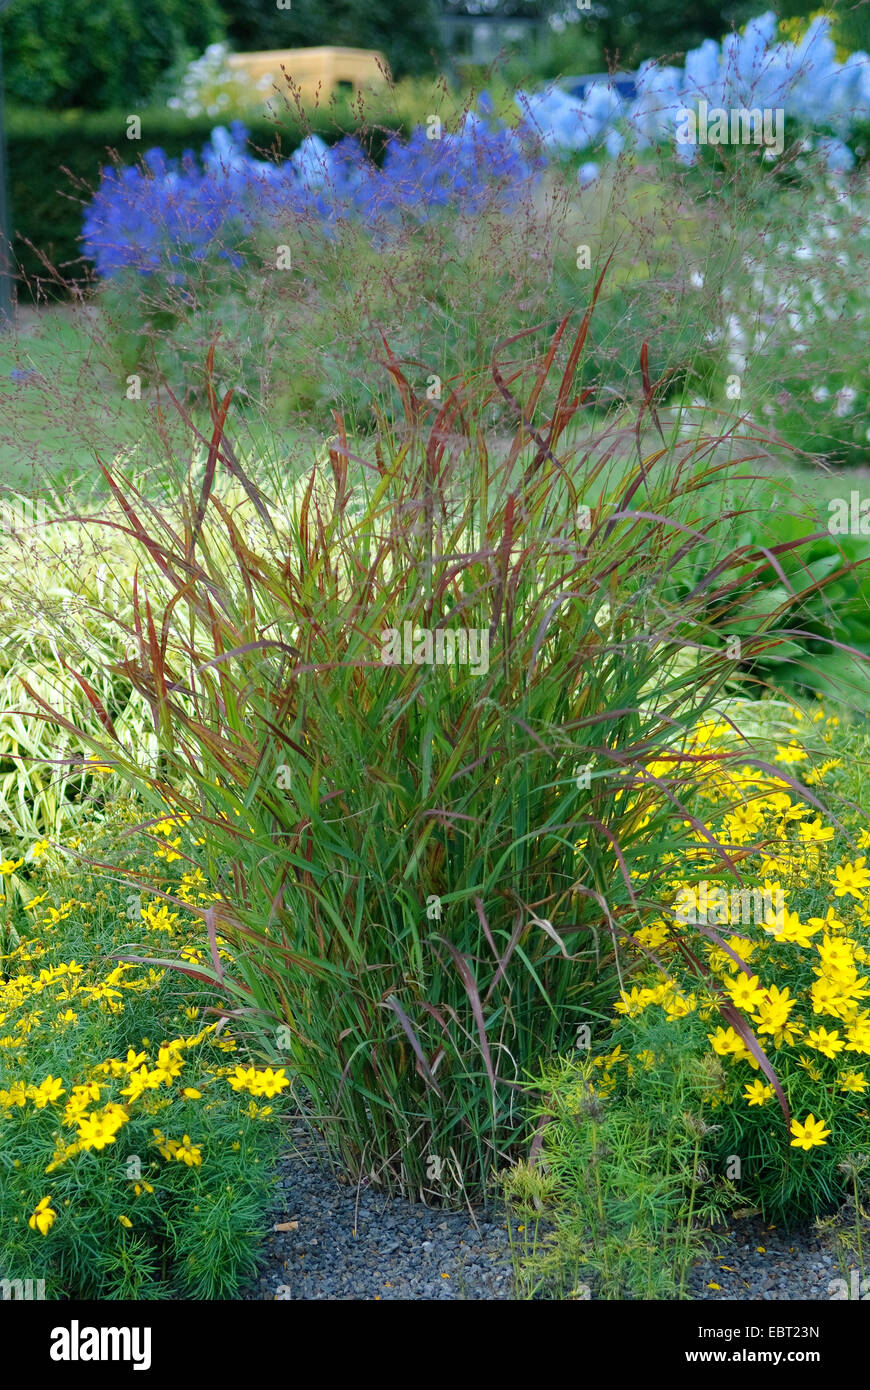 Old switch panic grass (Panicum virgatum 'Rotstrahlbusch', Panicum virgatum Rotstrahlbusch), cultivar Rotstrahlbusch Stock Photo